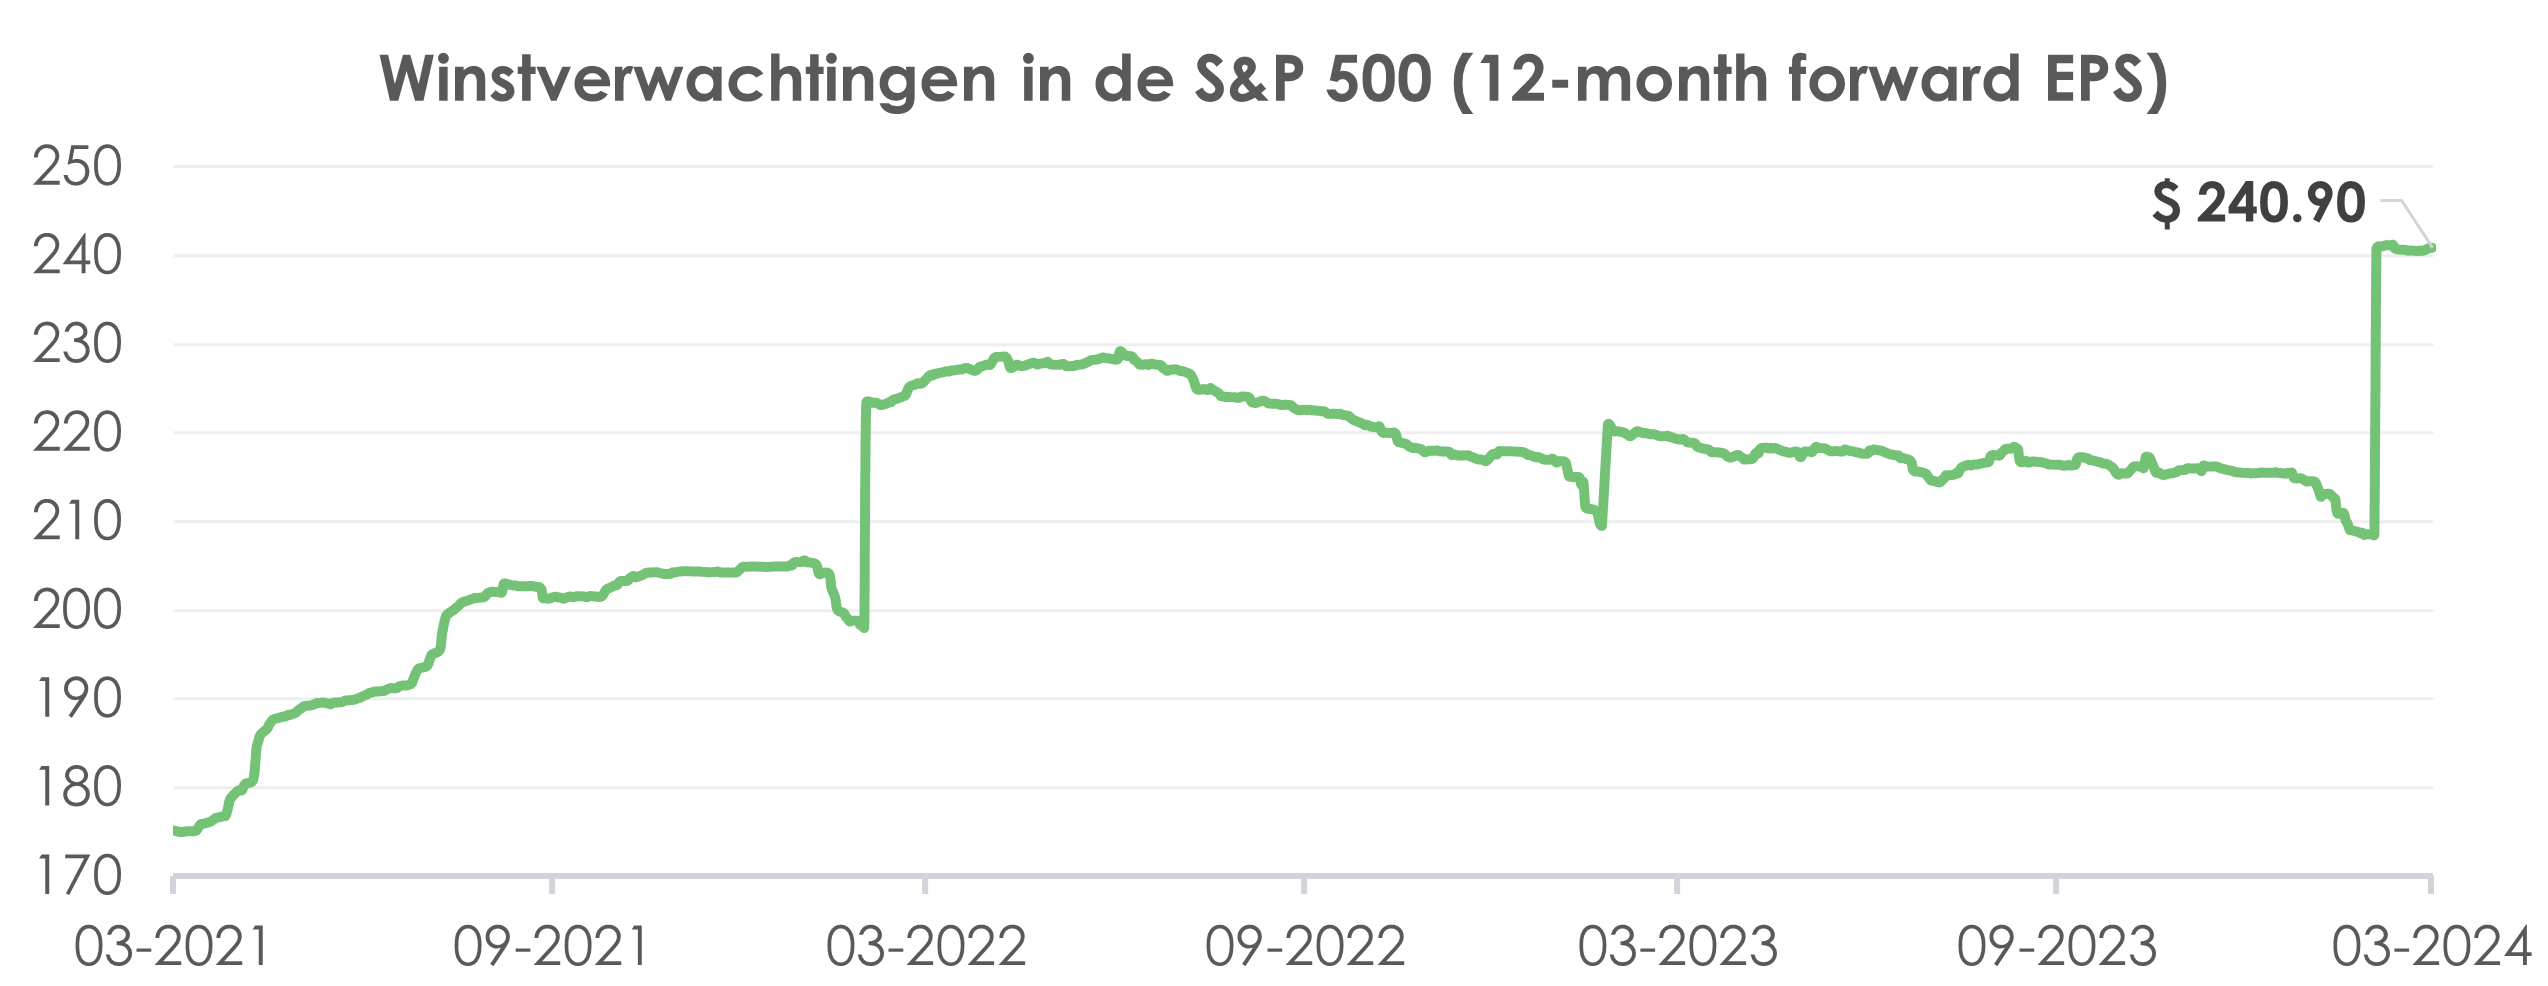 Winstverwachtingen in de S&P 500 index (12-month forward EPS) | Ostrica Vermogensbeheer